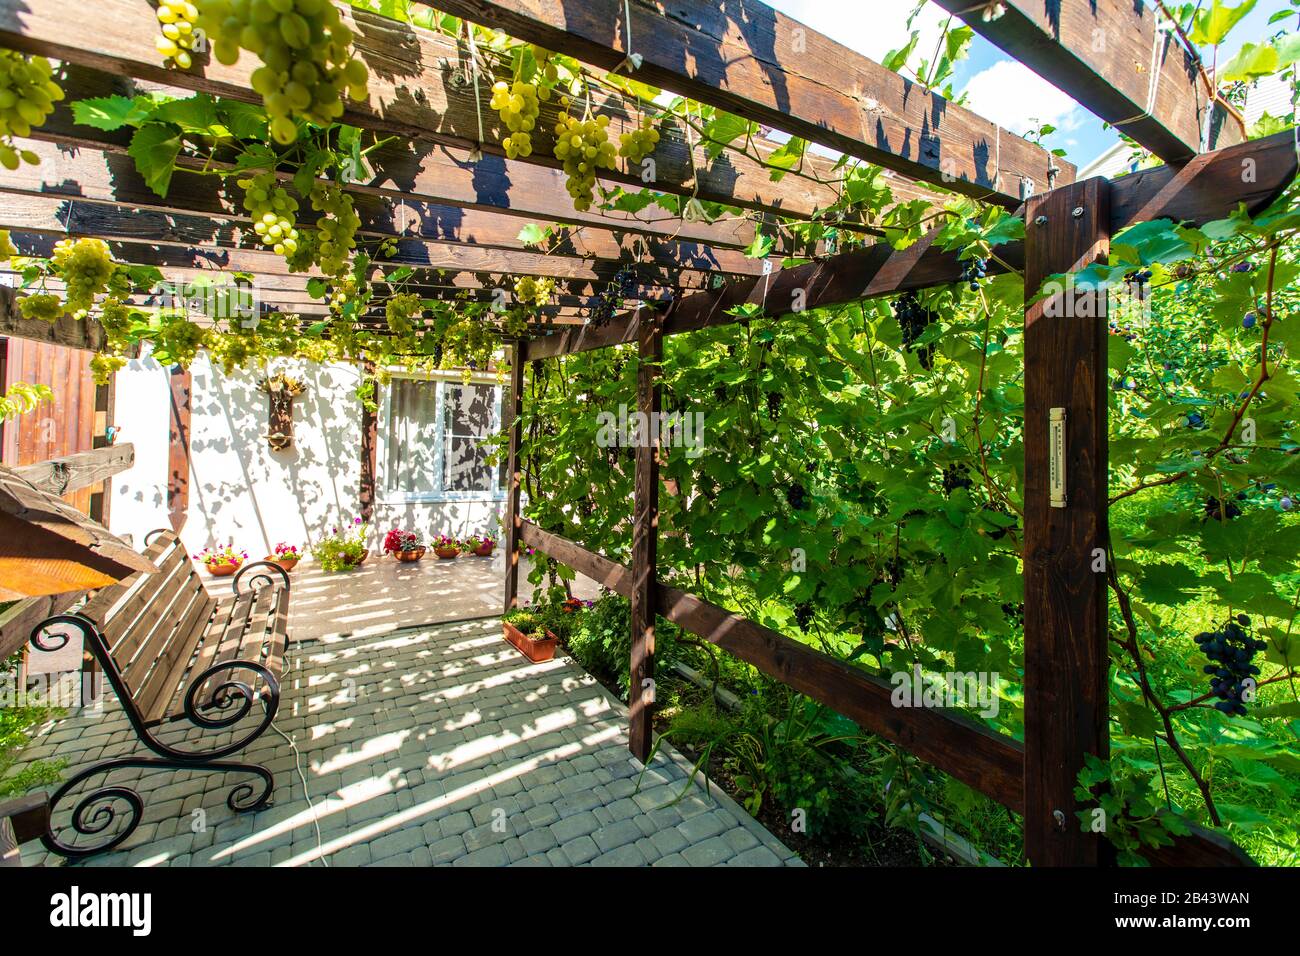 Il cortile posteriore del cottage con un baldacchino in legno fatto di travi - pergola. Le uve crescono sui bar e creano un'ombra. Sono visibili grappoli di uva Foto Stock